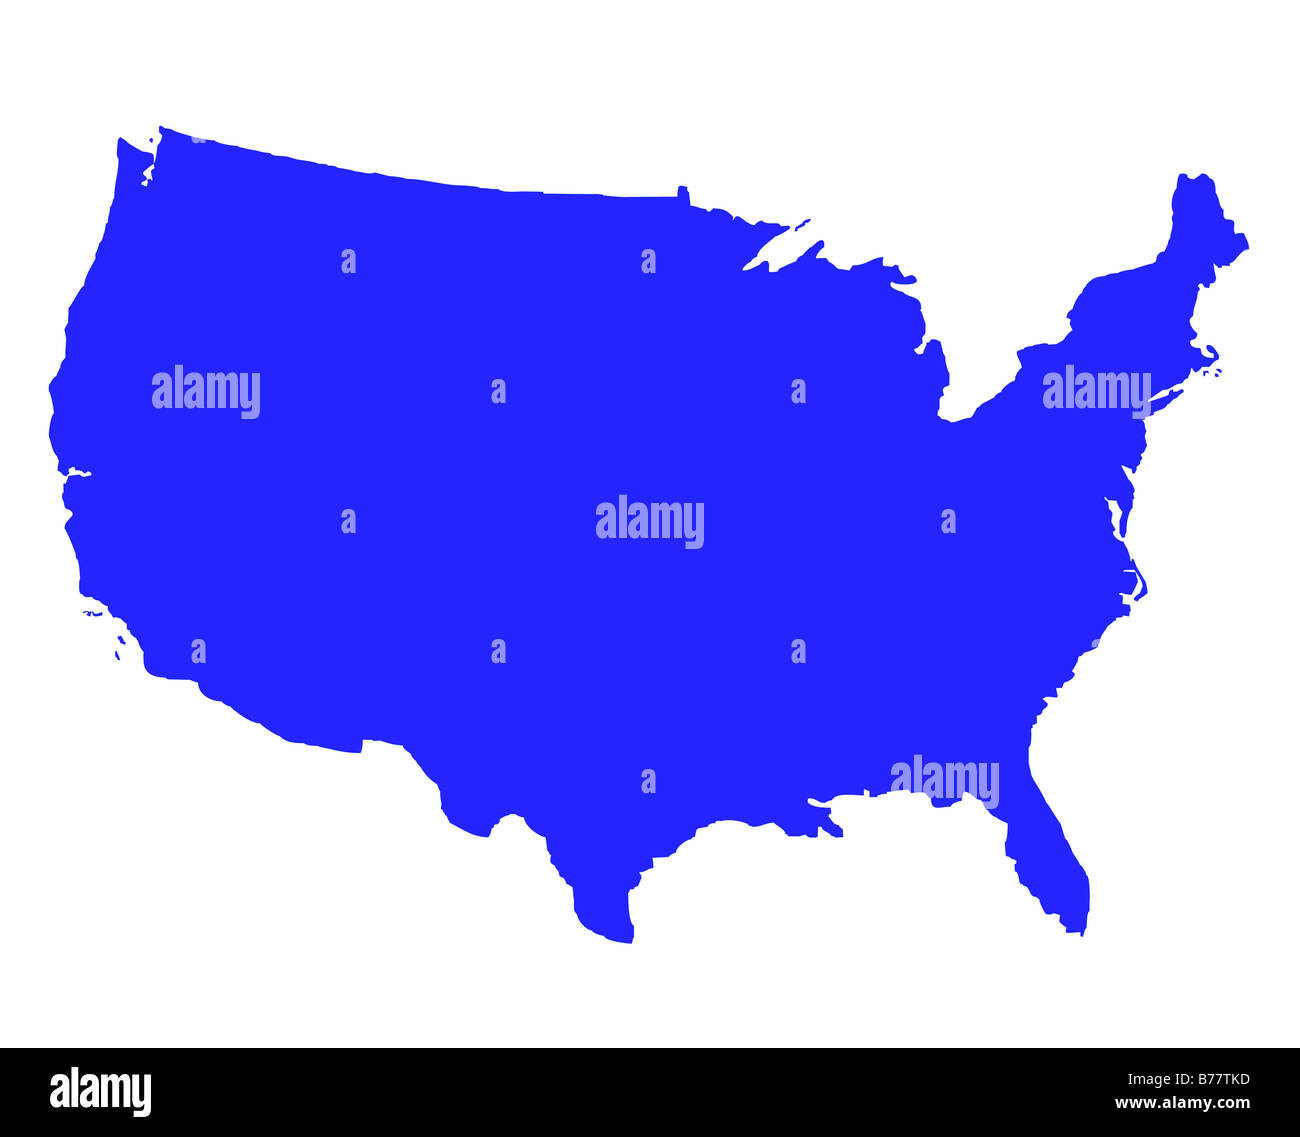 Stati Uniti d'America mappa di contorno in blu isolato su sfondo bianco Foto Stock